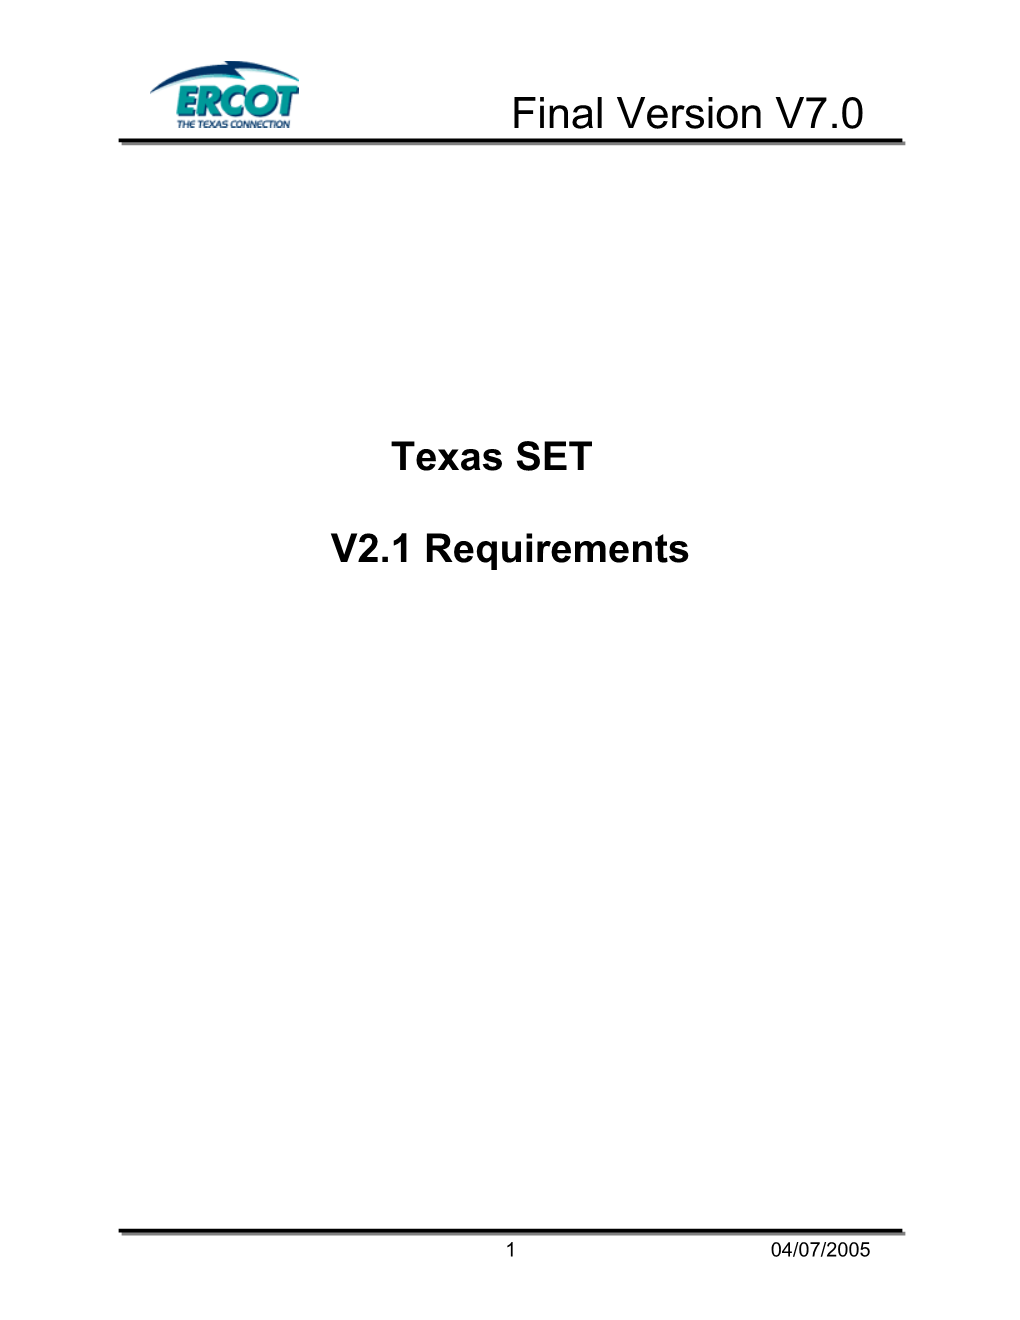 Texas SET V2.1 Requirements